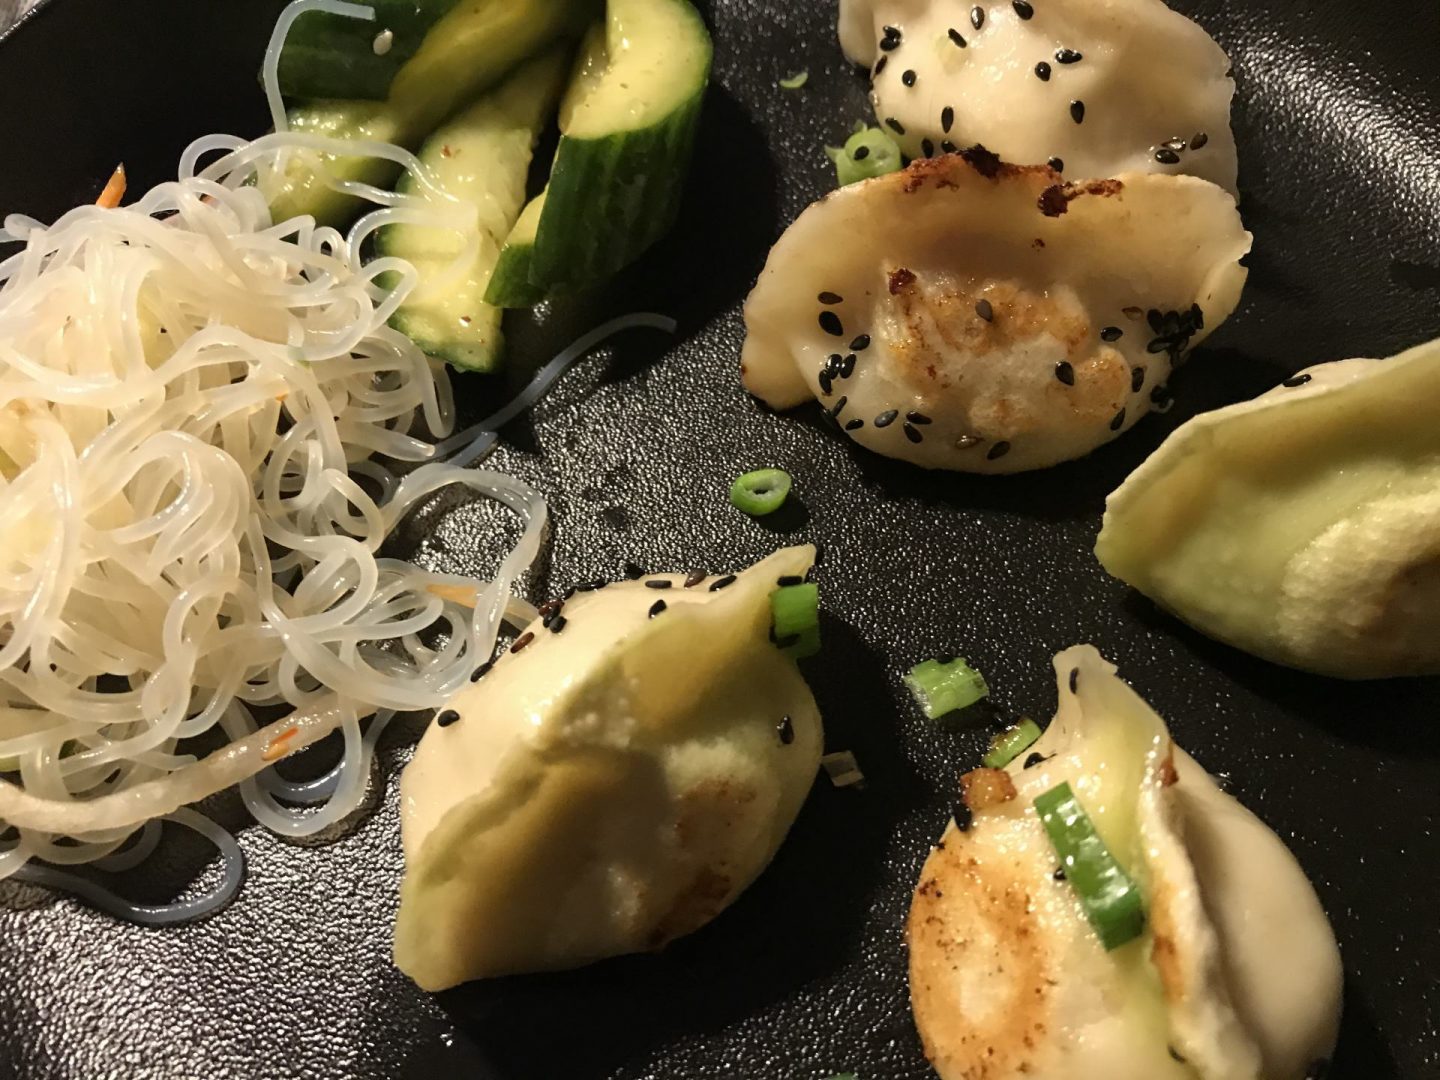 Erfahrung Bewertung Kritik Jia Dortmund Dumplings Foodblog Sternestulle